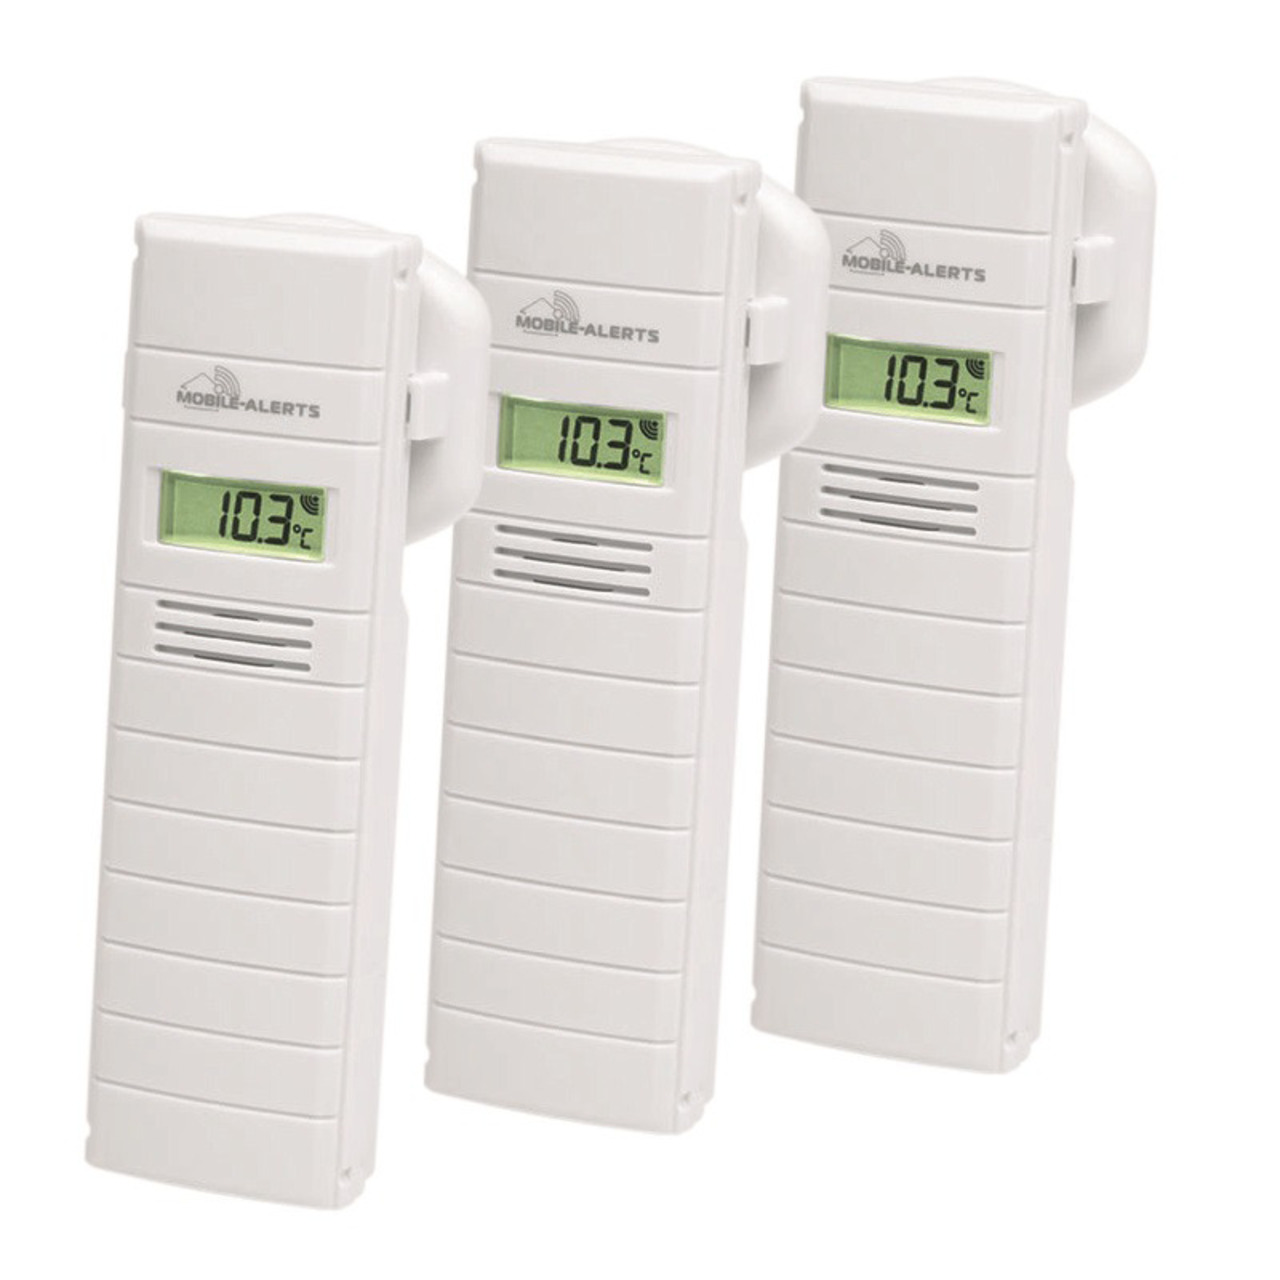 Mobile Alerts 3er-Set Temperatur-Luftfeuchtigkeitssensor MA10200 mit LC-Display unter Klima - Wetter - Umwelt